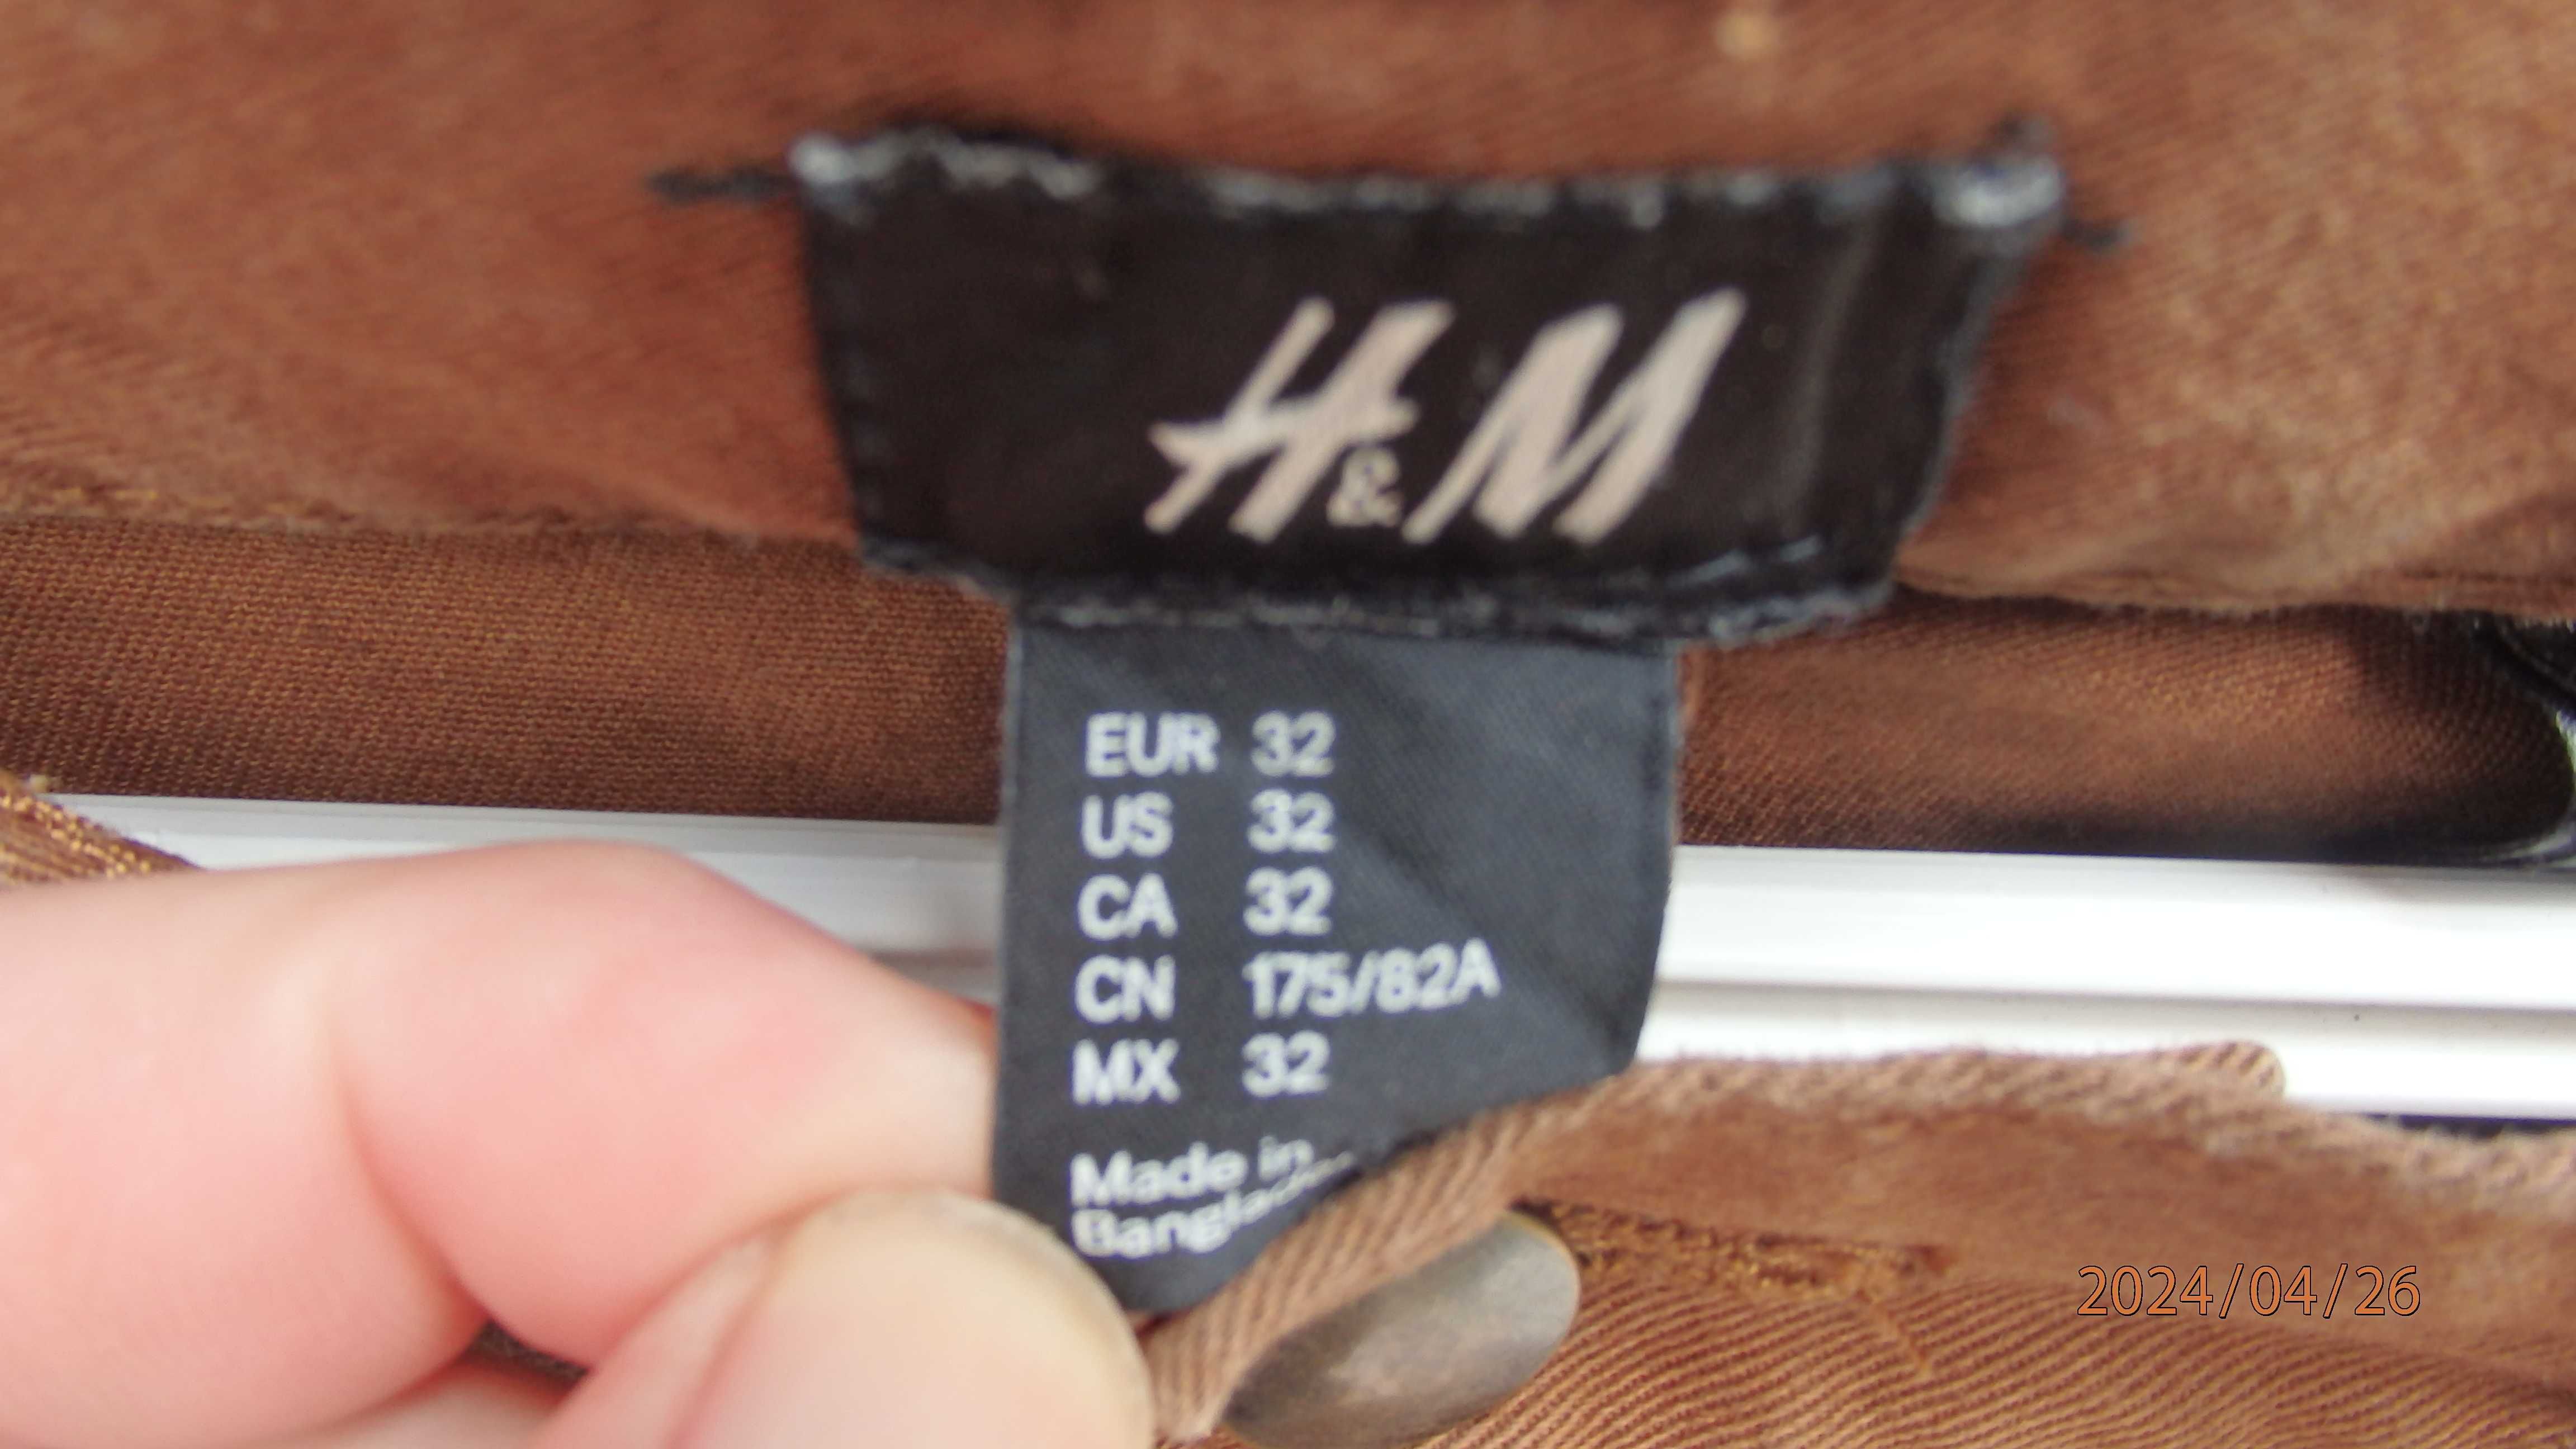 Spodnie męskie krótkie firmy H&M rozmiar EUR 32.